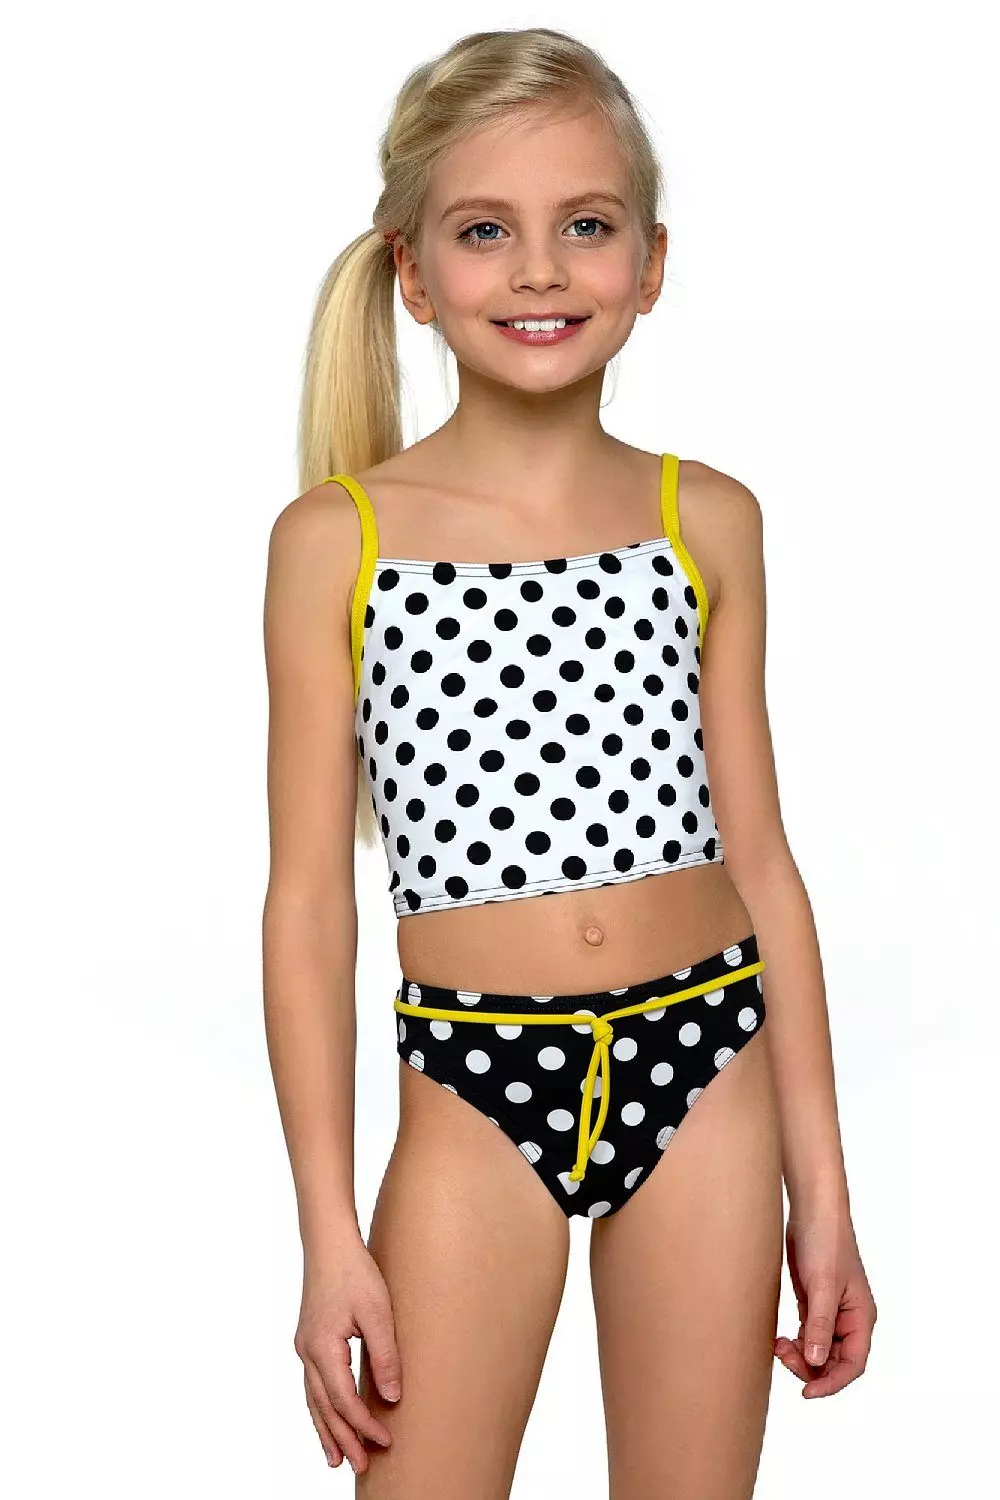 Աղջիկների համար լողավազանի մանկական լողազգեստ (77 լուսանկար). Լողի մոդել, լողափի համար երեխաների փակ լողազգեստ 13583_60